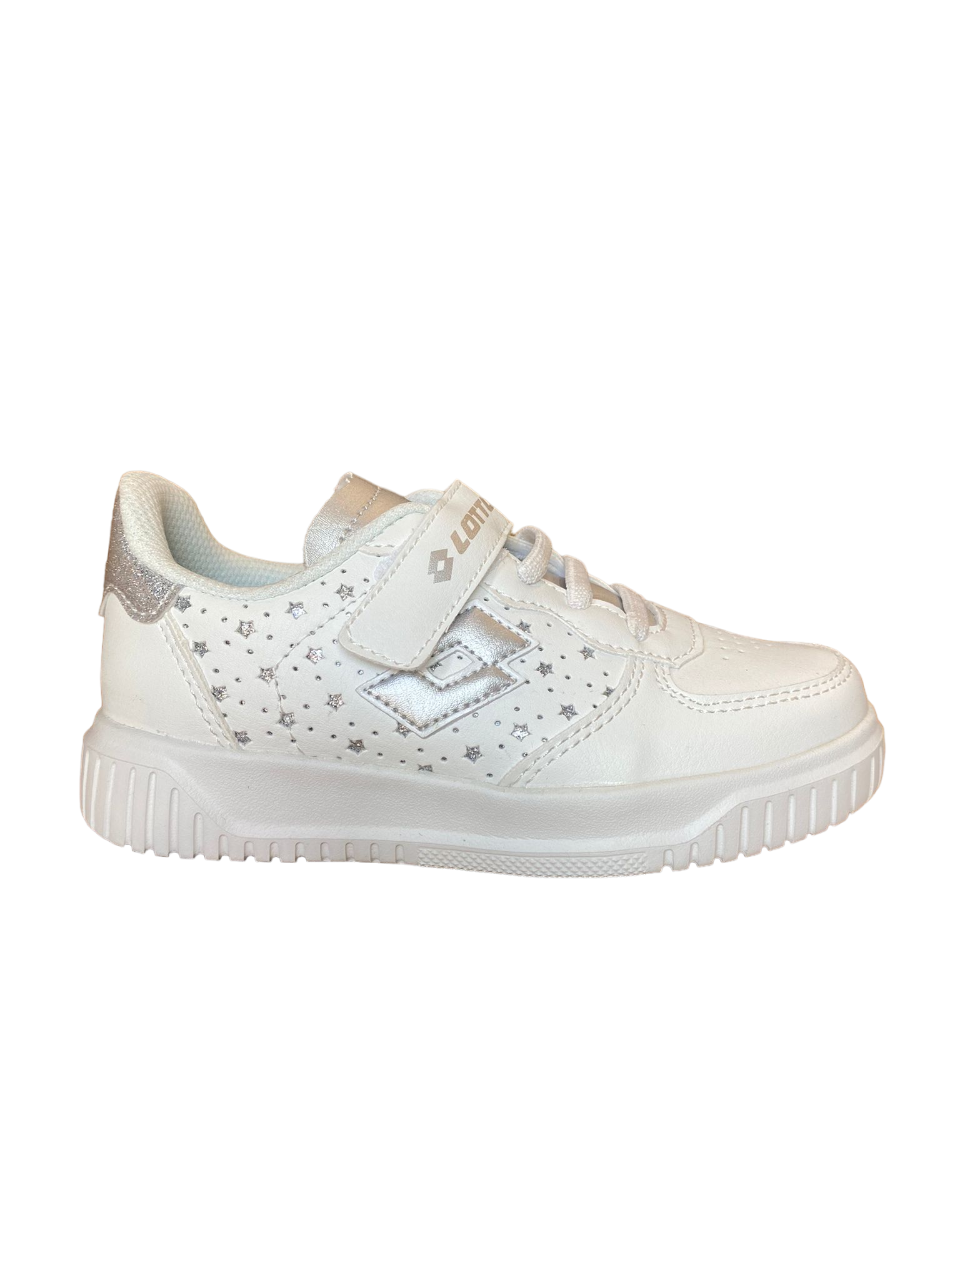 Lotto sneakers con strappo da bambina Venus 1 AMF 219415 1VQ white-silver metal 2